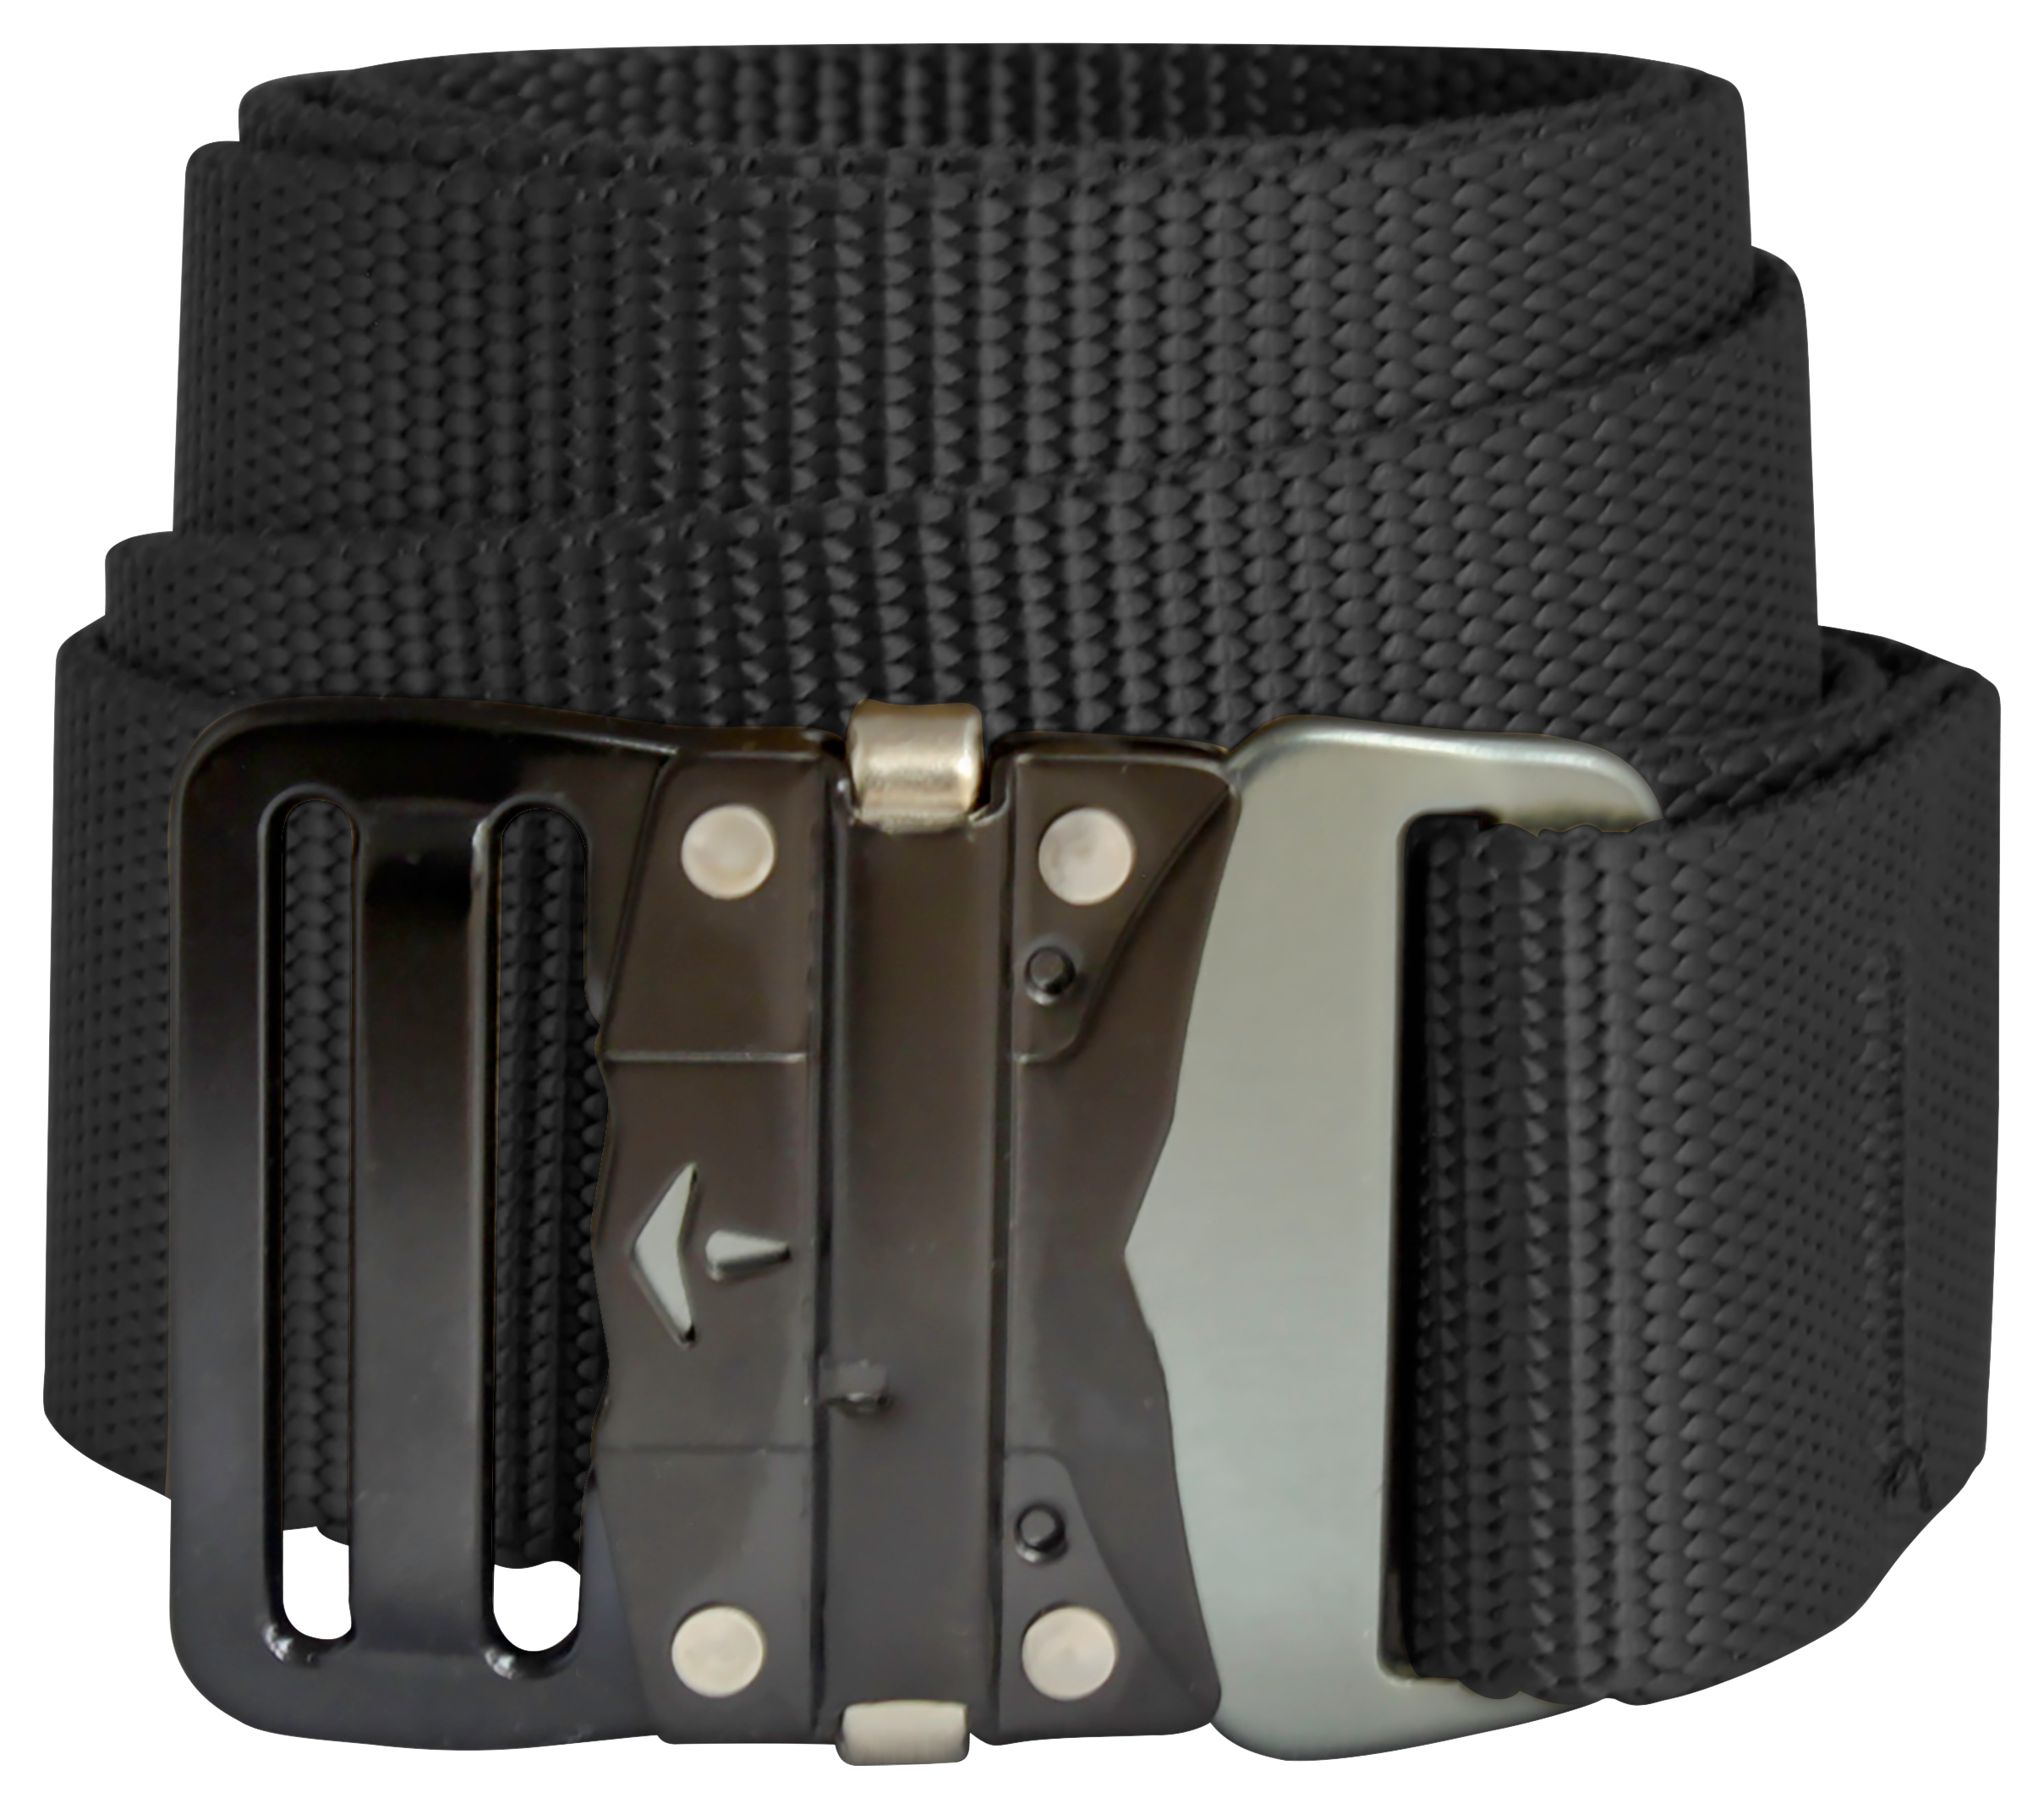 Bison Designs 38mm LoPro Buckle Belt for Men - Black - M